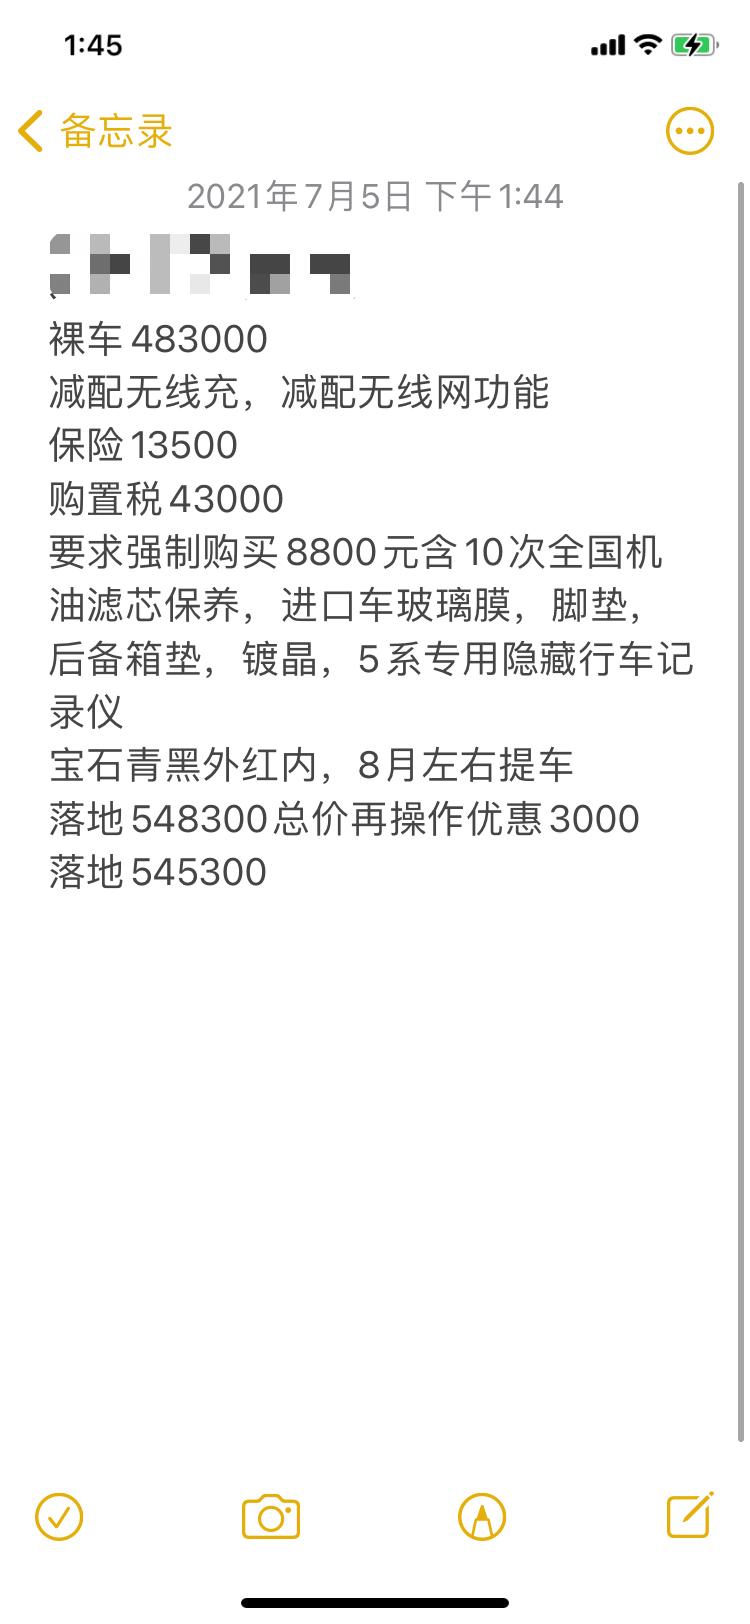 宝马5系 有最近在郑州订530尊享运动的老板吗？大概什么价格？我这边谈到54最低了，价格这么坚挺吗？